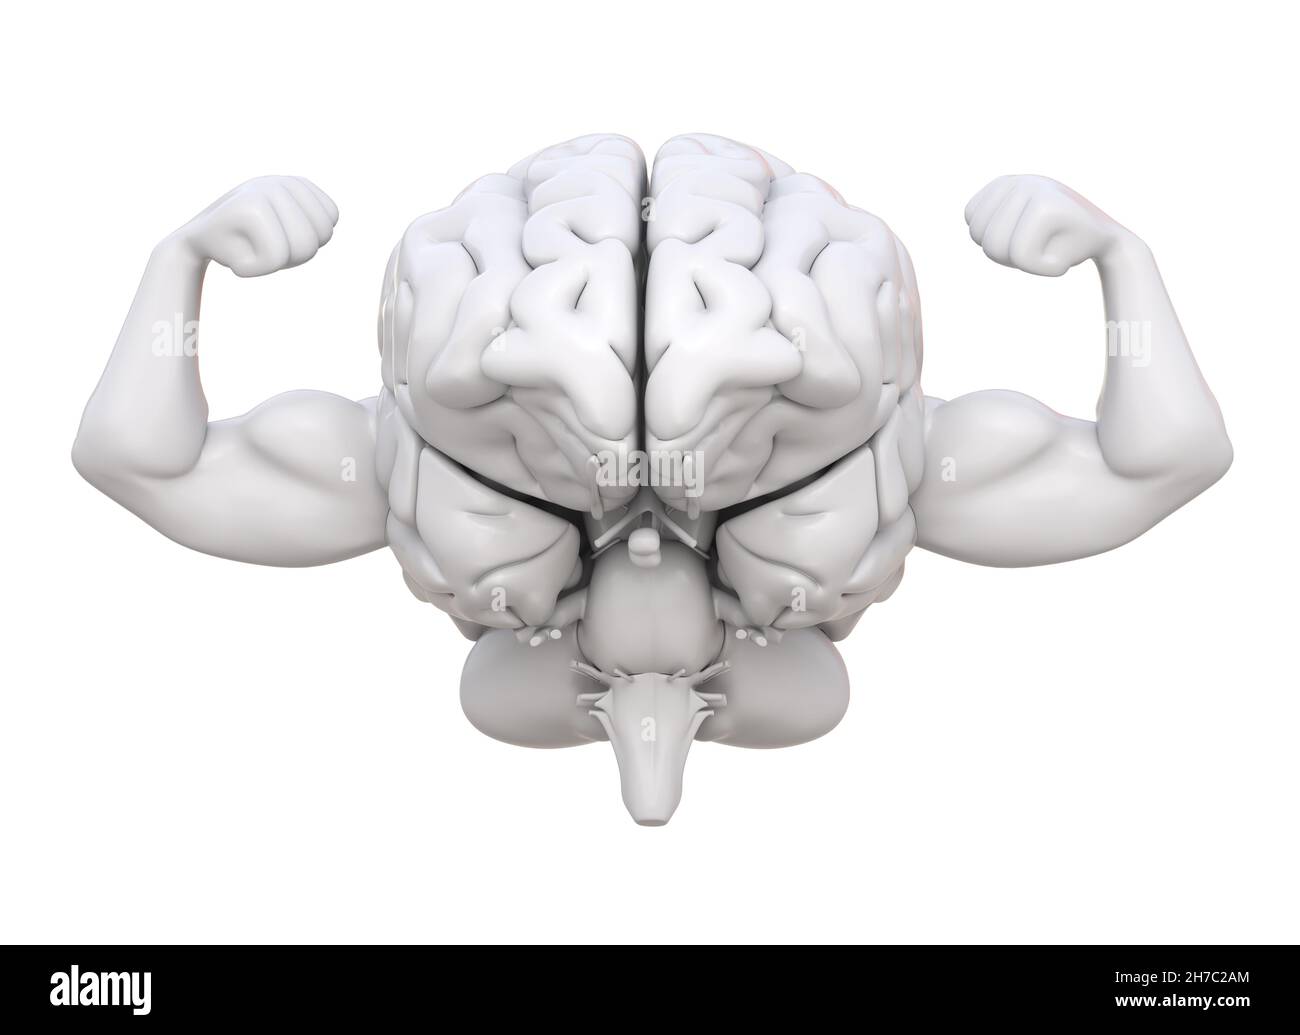 Cerebro sano y fuerte. Salud del intelecto y de la mente. 3D ilustración Foto de stock